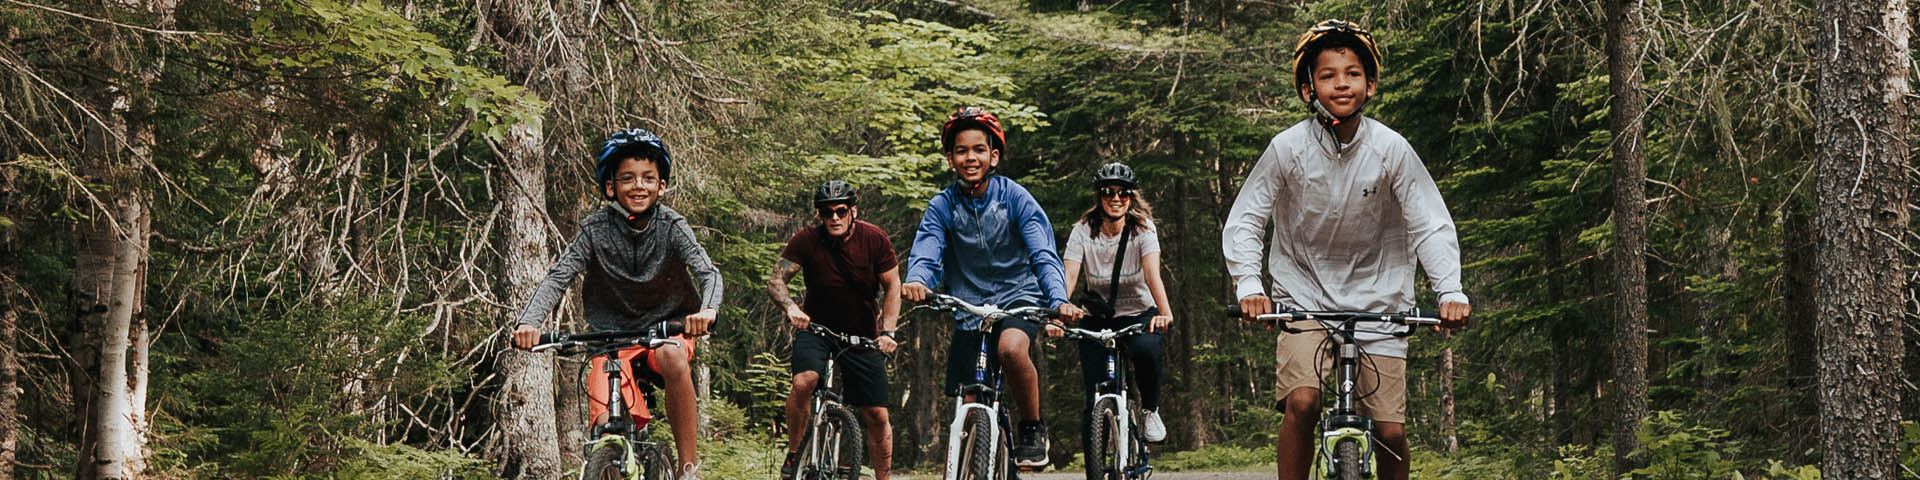 Une famille en vélo sur un sentier dans la forêt